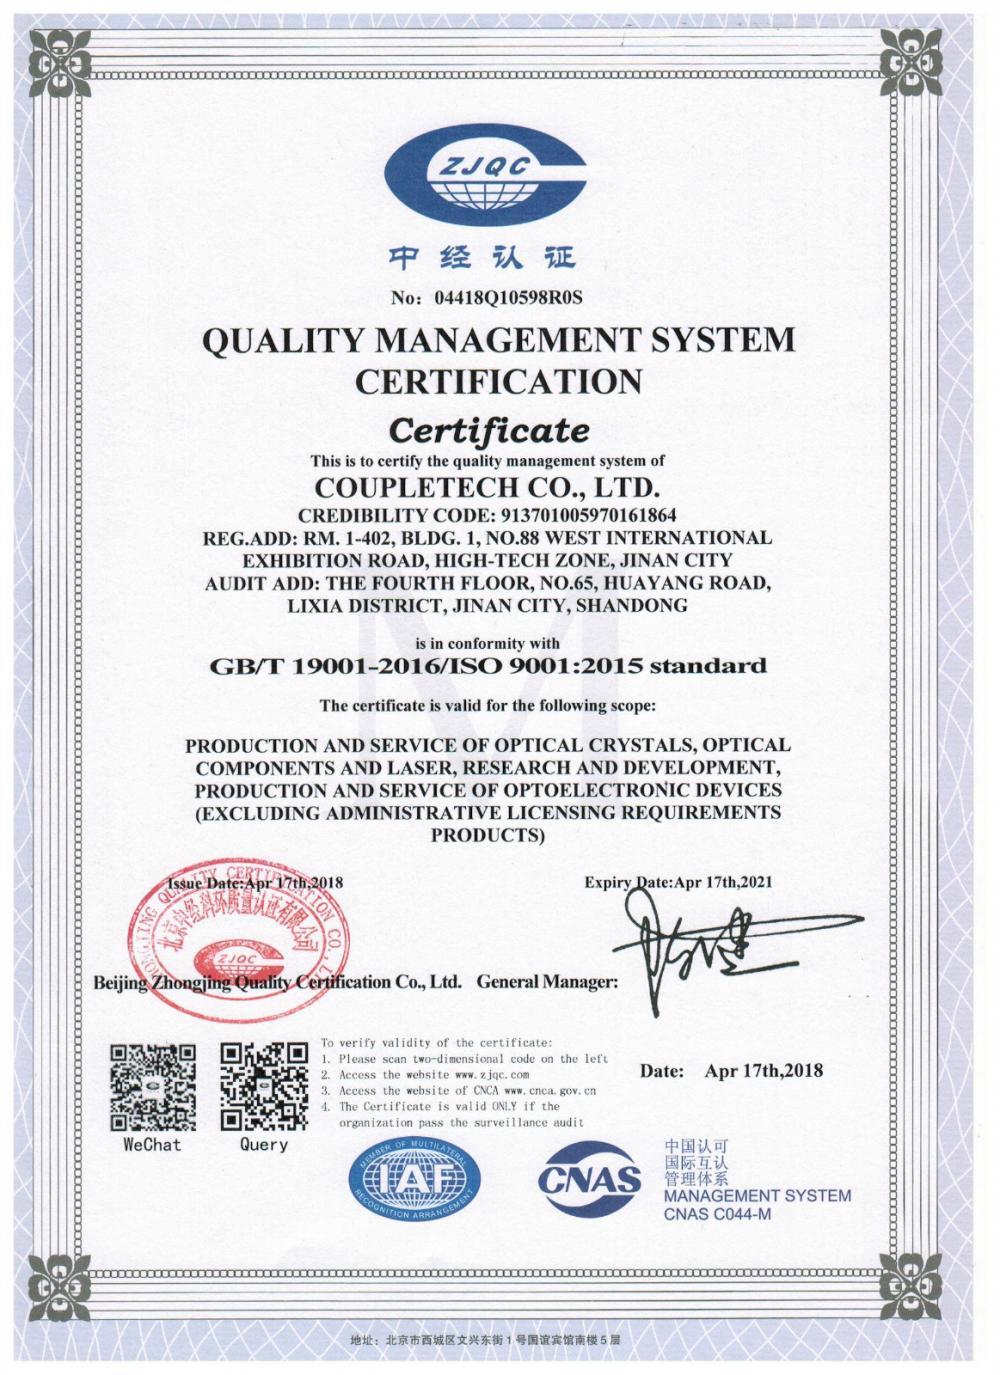 Цоуплетецх Цо., Лтд. је прошао сертификат: Модуларни носач за активне кристале за контролу температуре.